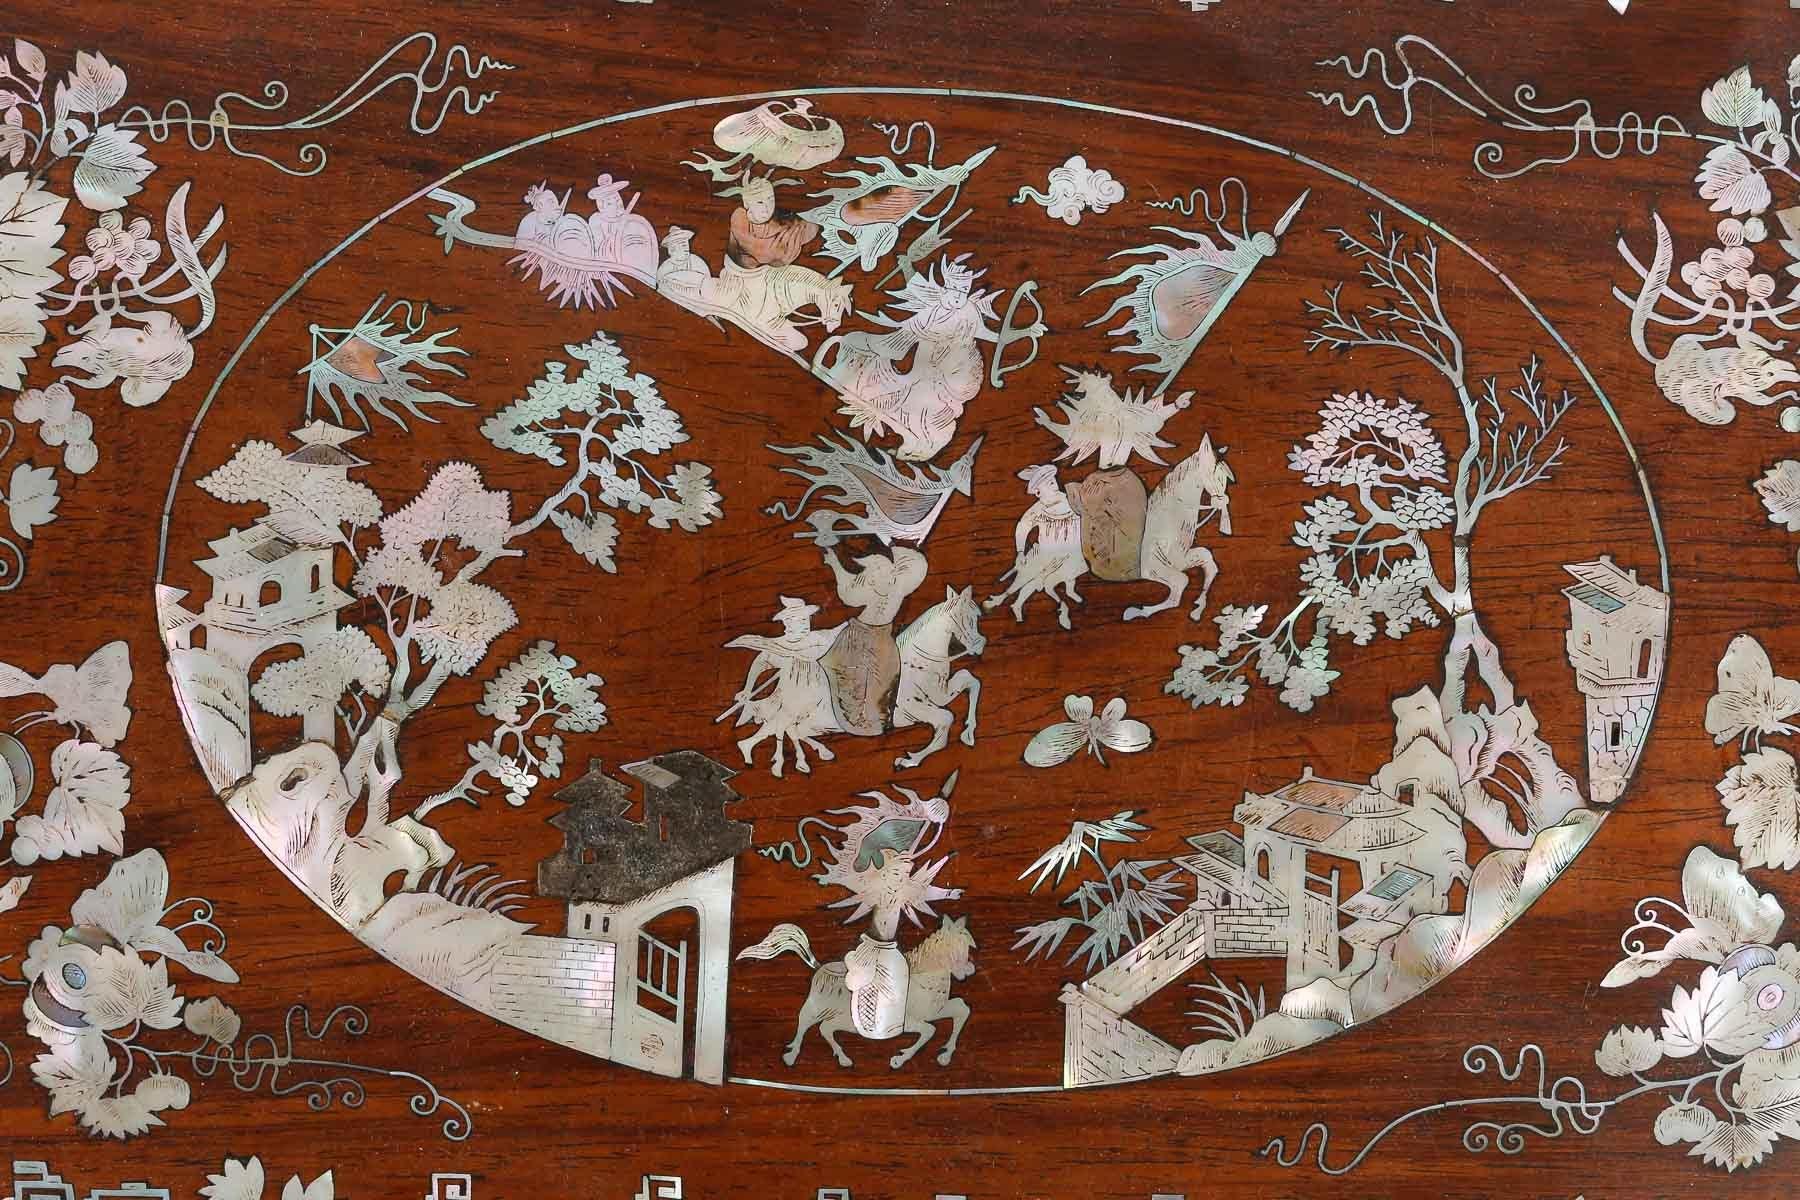 4 Paneele einer Holzkiste mit Perlmutt-Intarsien, chinesische Szenen, 19. Jahrhundert.

4 Tafeln eines Holzkastens mit Perlmutt-Einlagen, die chinesische Szenen darstellen, Asiatische Kunst, 19.  

1-H: 20cm , B: 32cm, T: 1cm
2-H: 11,5cm , B: 32cm,